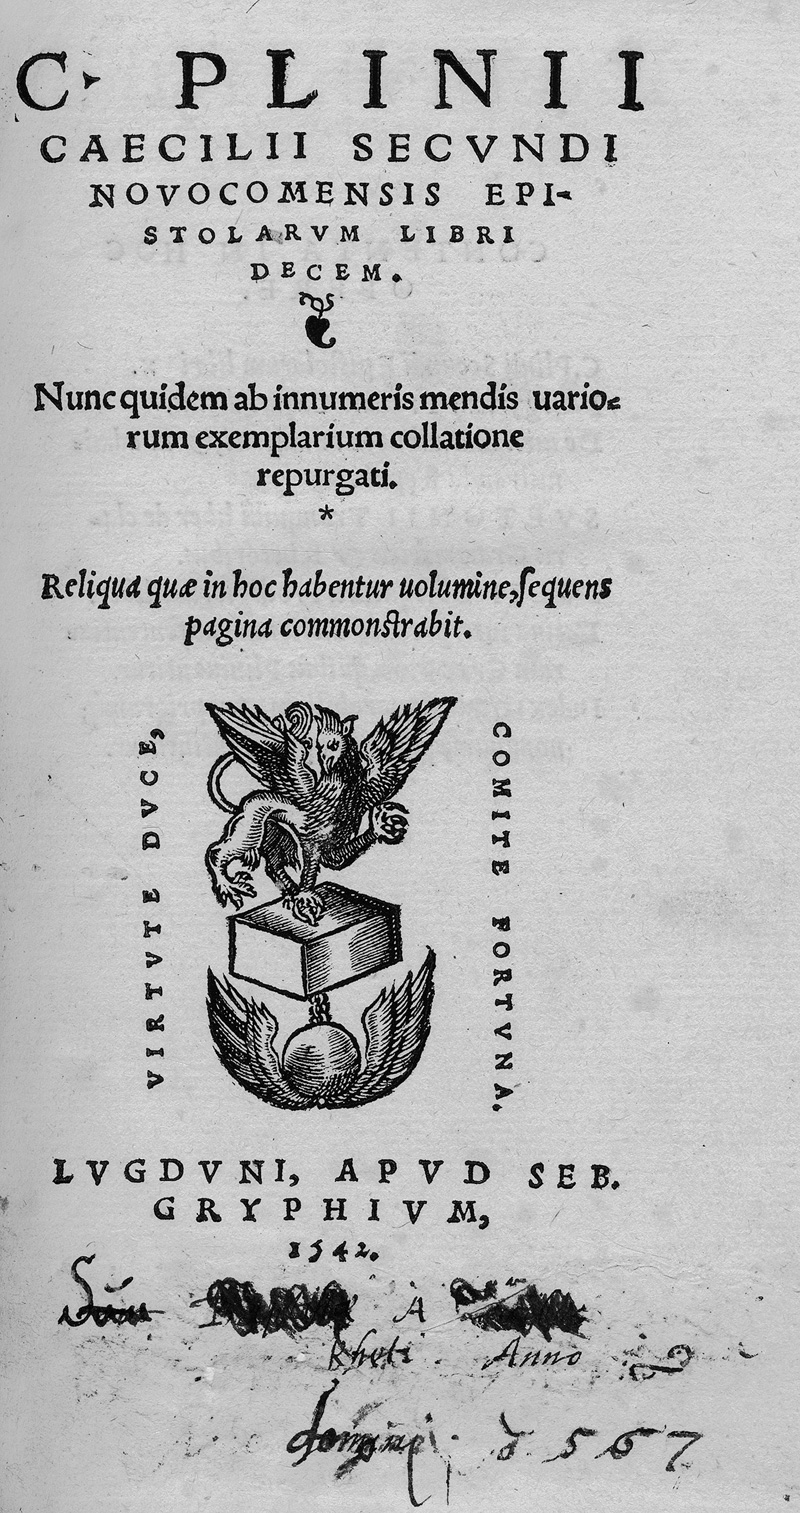 Plinius Caecilius Secundus, Gaius: Epistolarum libri decem